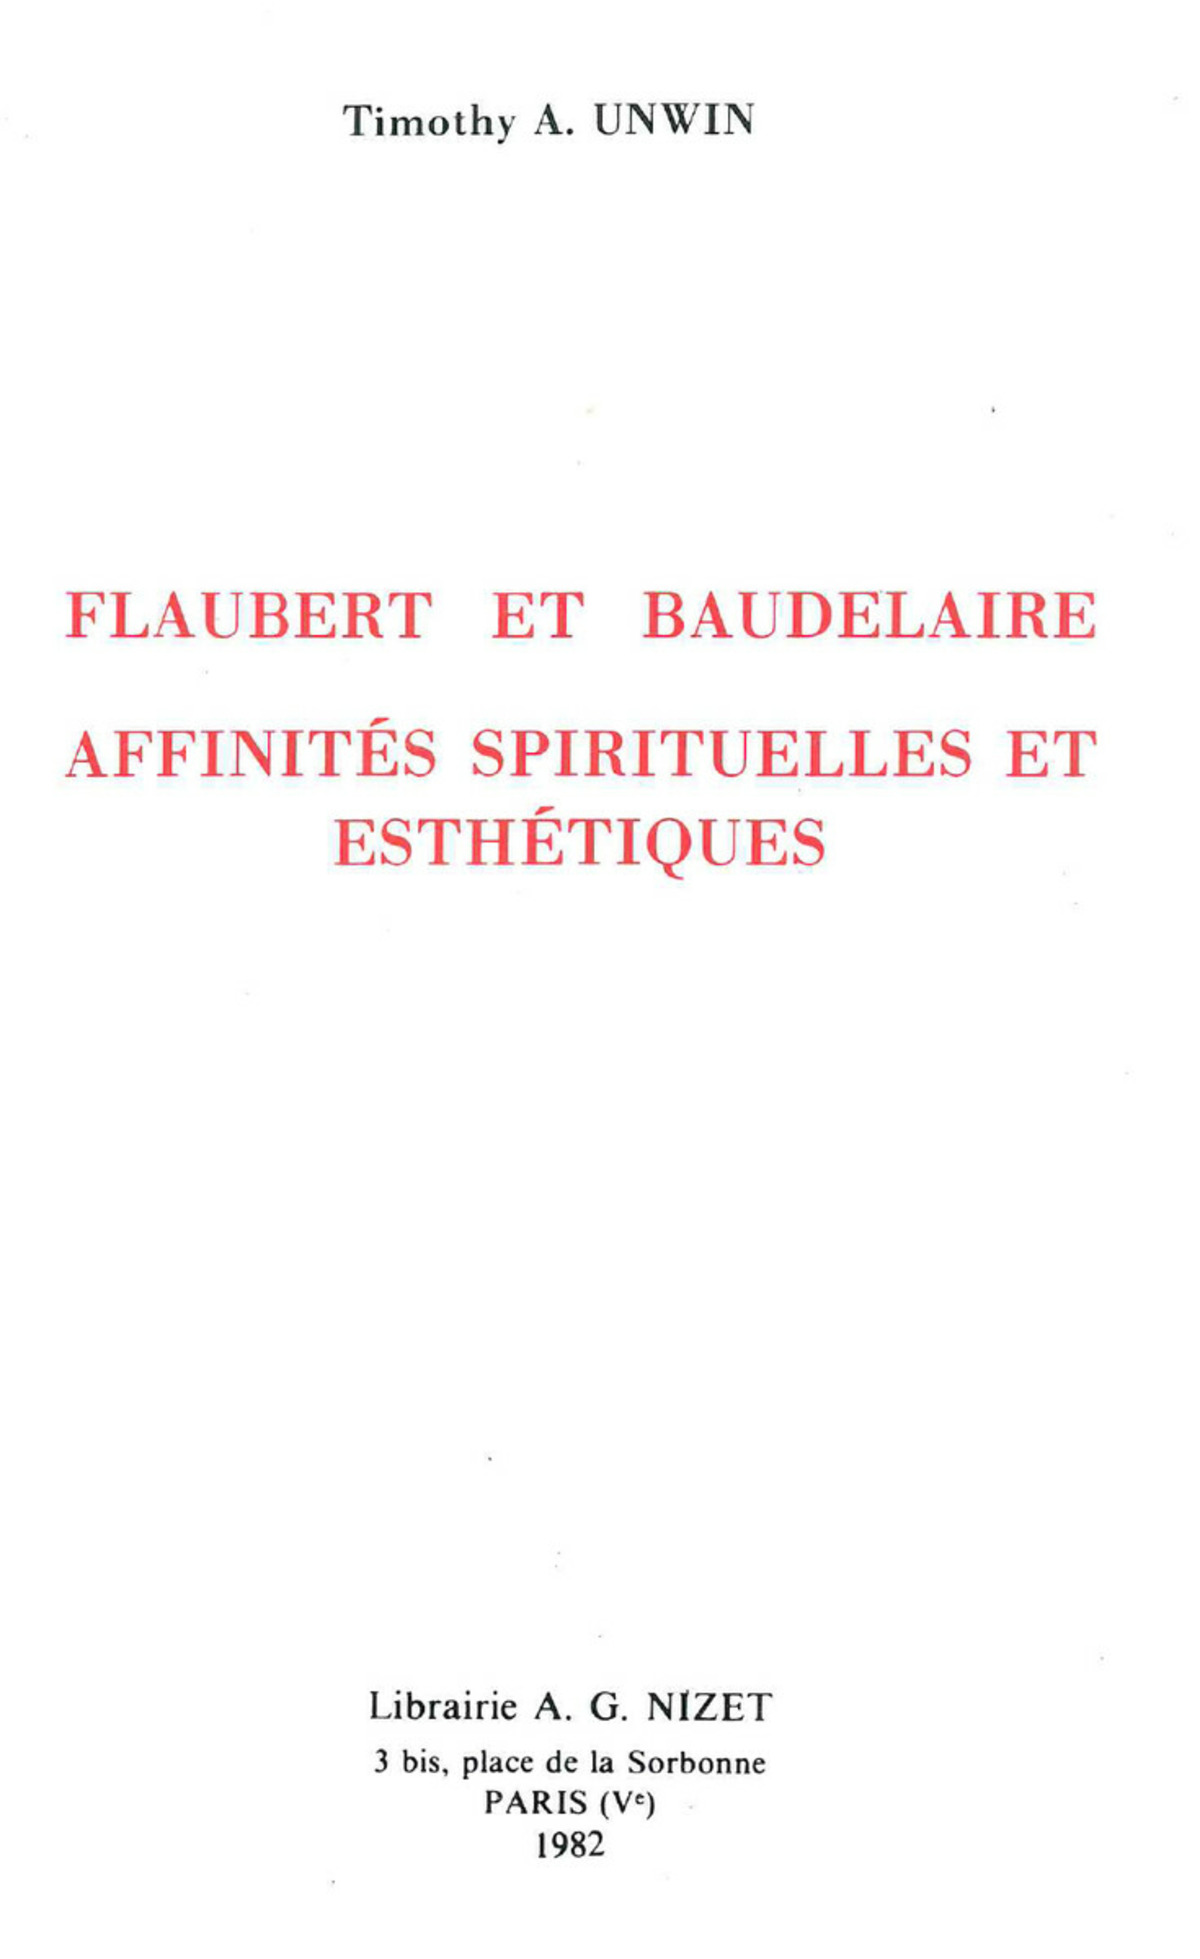 Flaubert et Baudelaire : affinités spirituelles et esthétiques